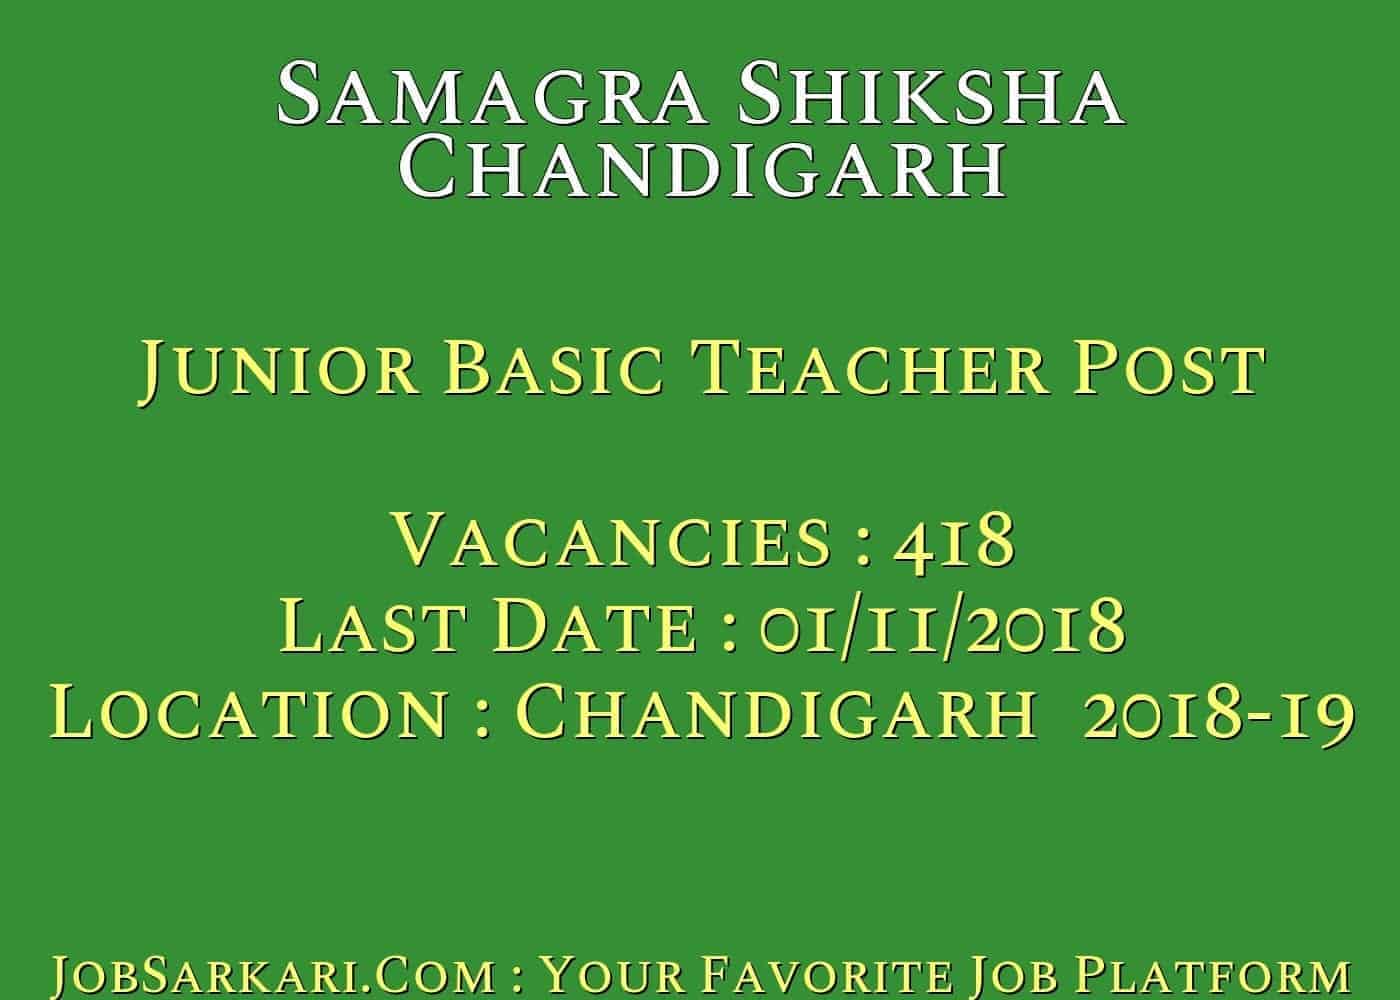 Samagra Shiksha Chandigarh Recruitment 2018 for Junior Basic Teachers Post